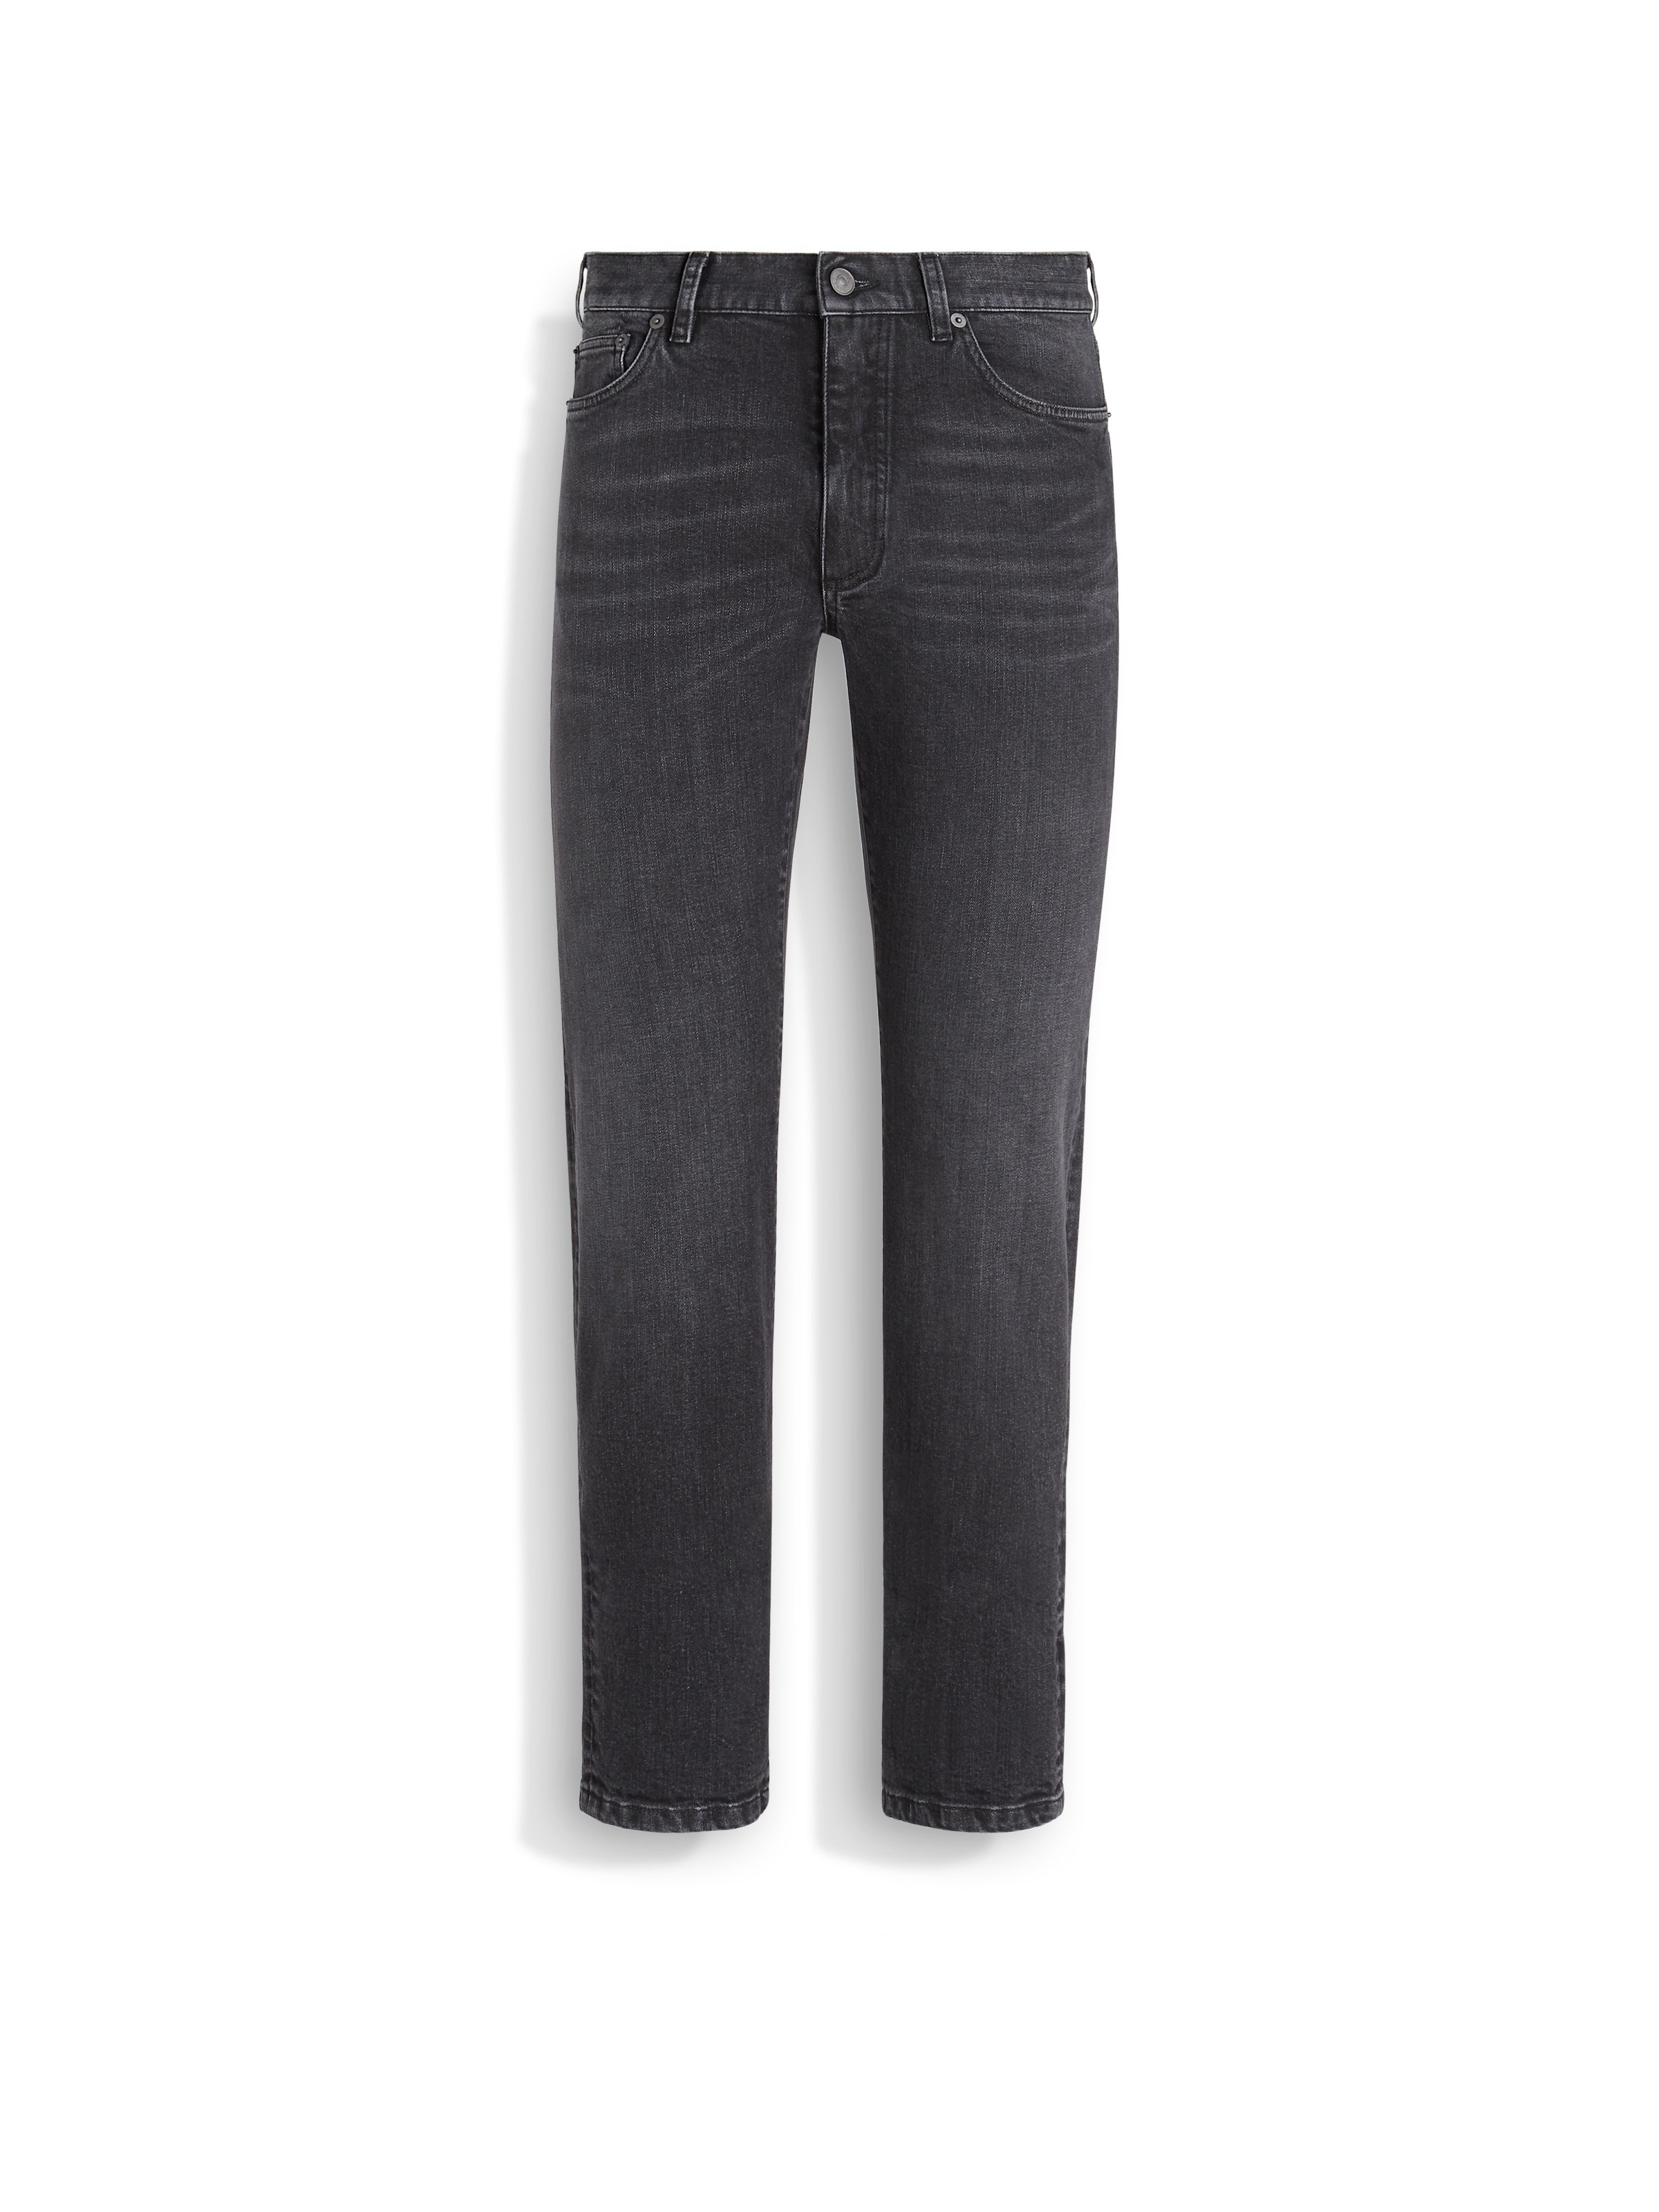 Zegna Dark Grey Stone-washed Stretch Cotton Roccia Jeans